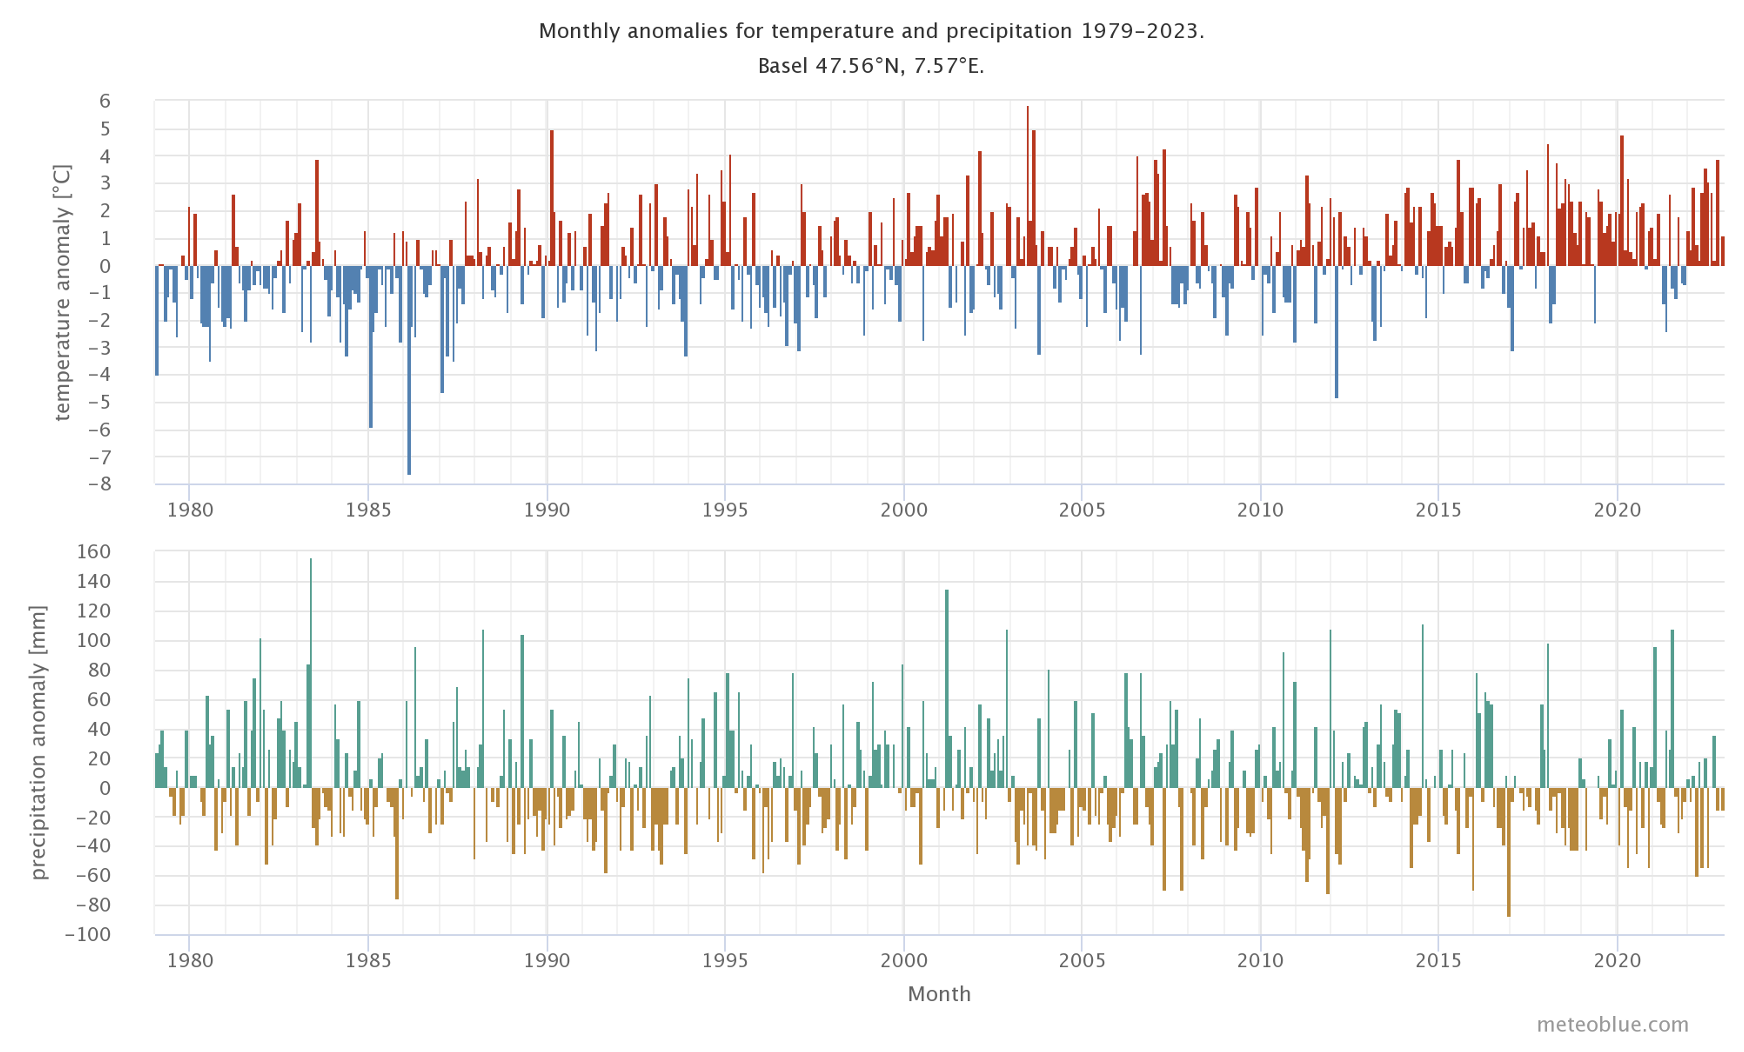 Anomalías mensuales de temperatura y precipitación en Basilea, resumen desde 1979 hasta hoy.